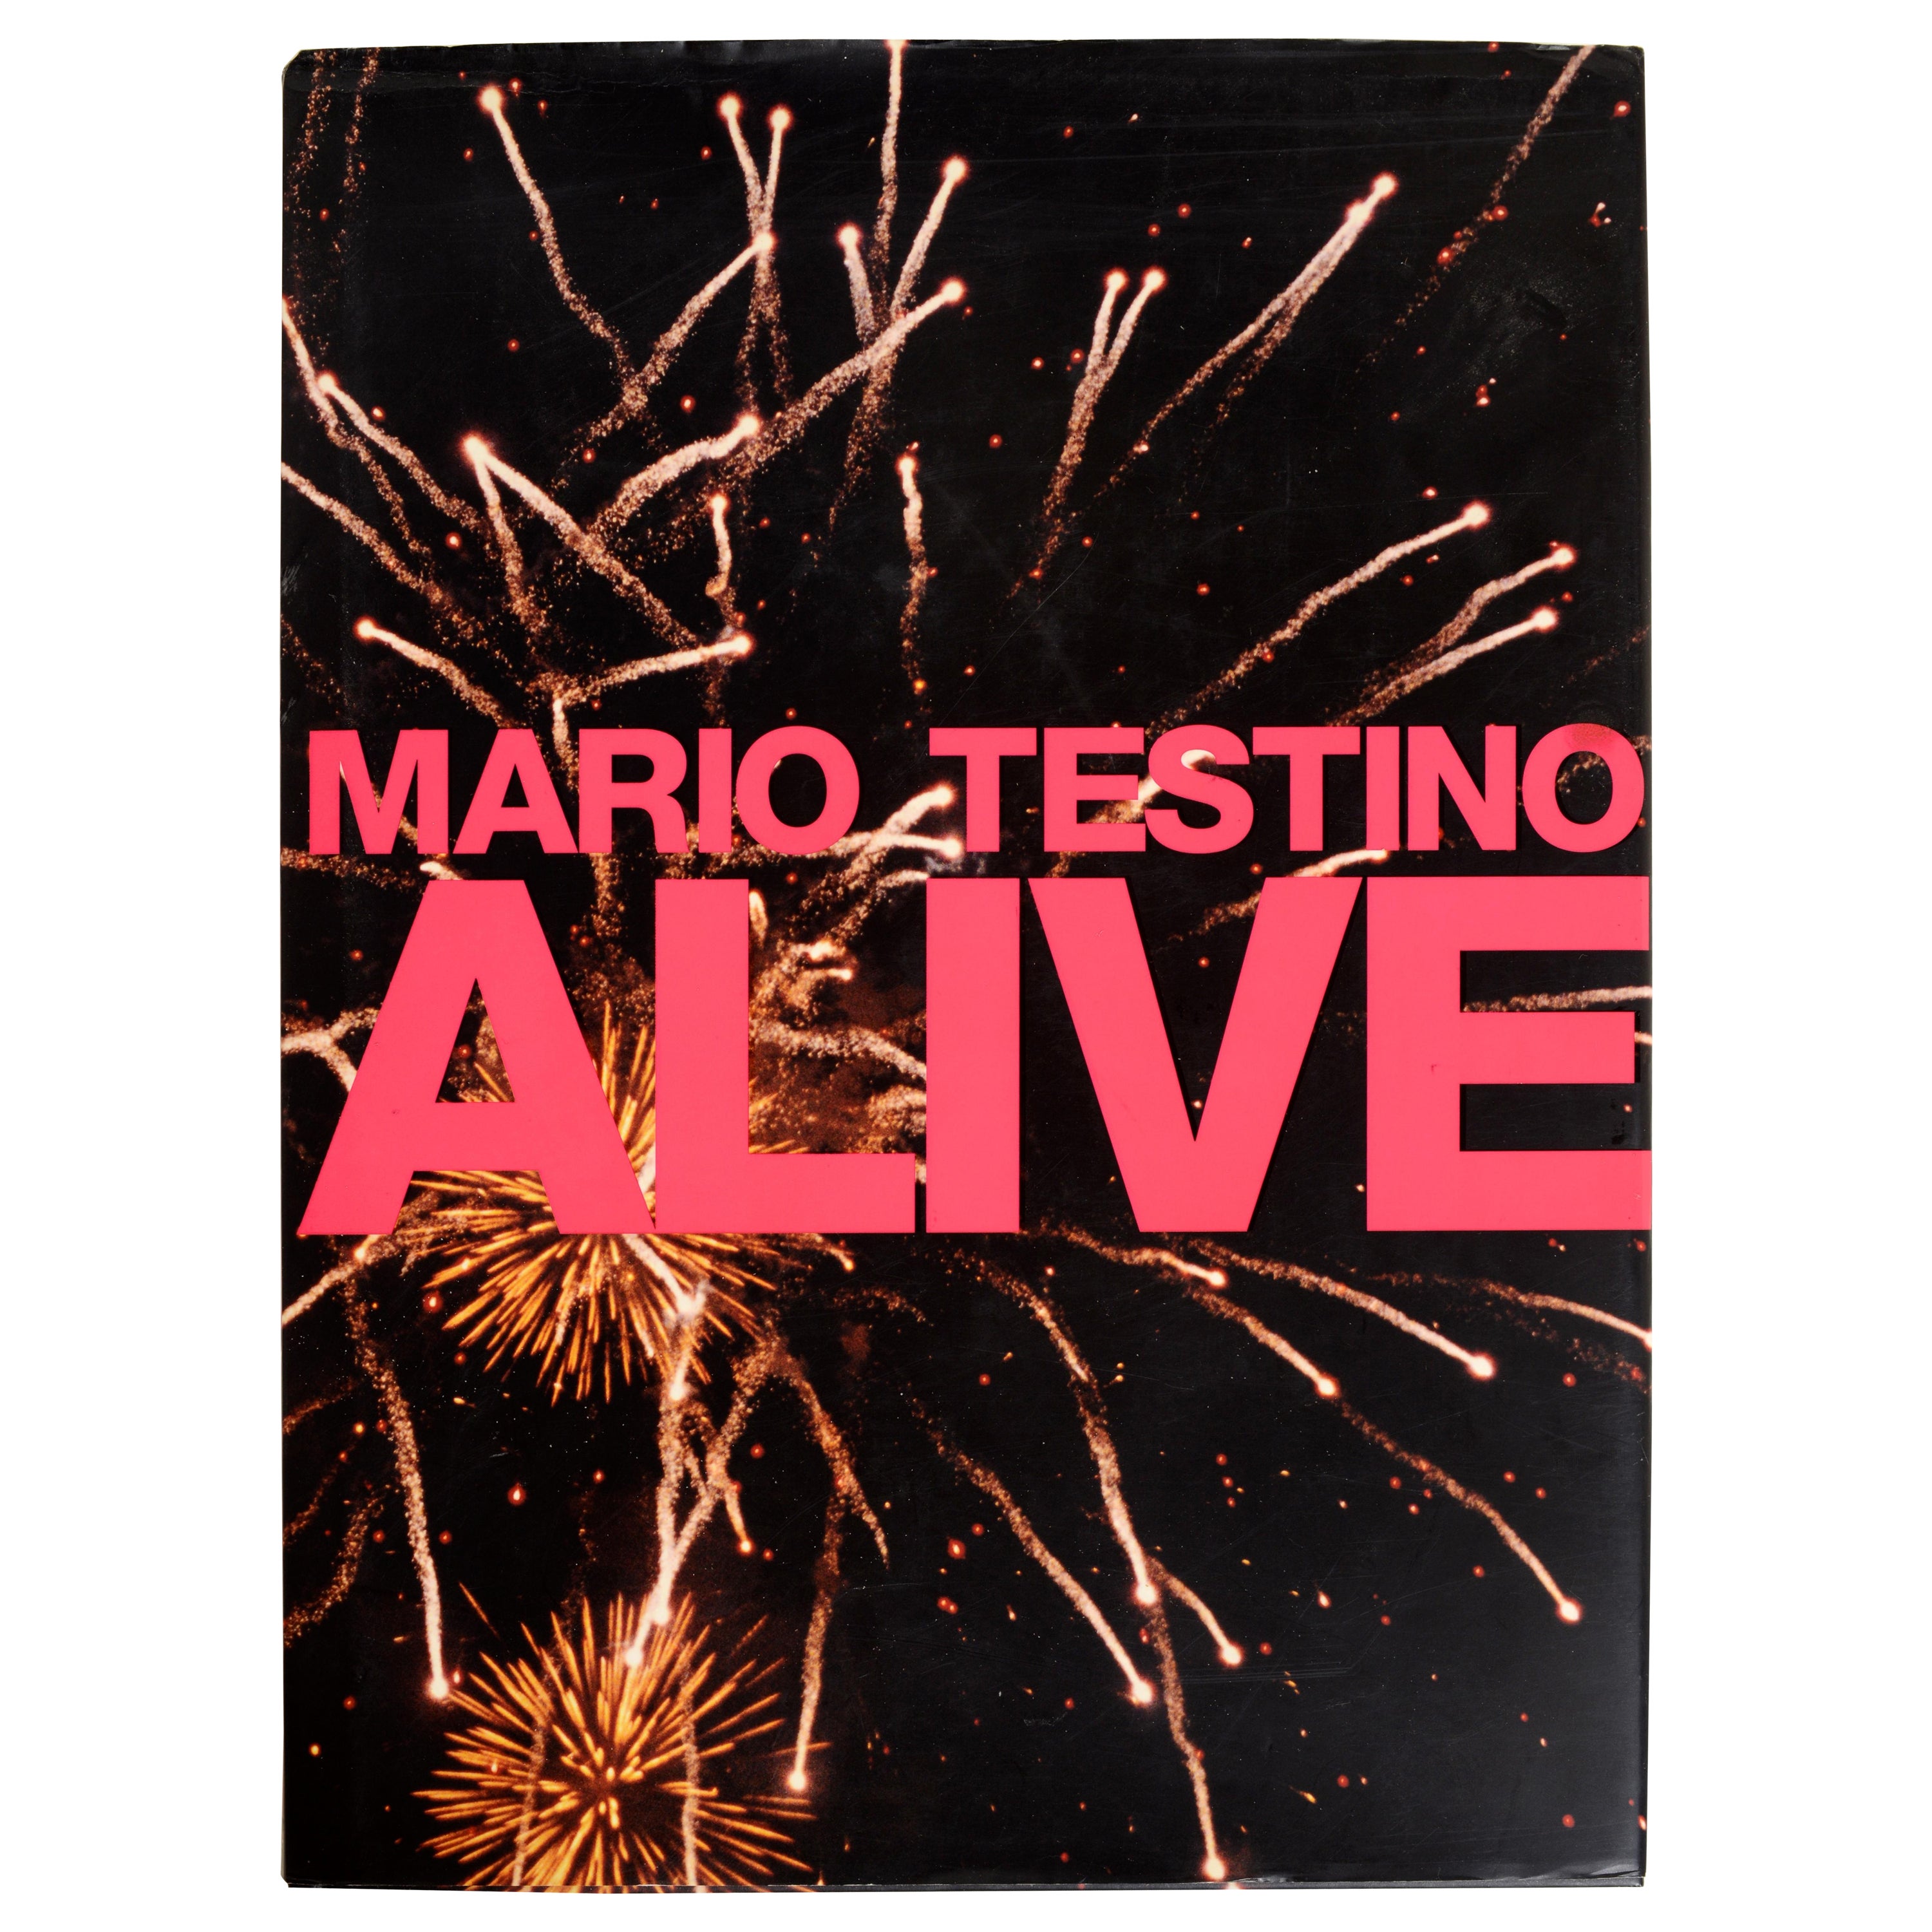 Introduction Alive de Mario Testino par Gwenth Paltrow, 1ère édition